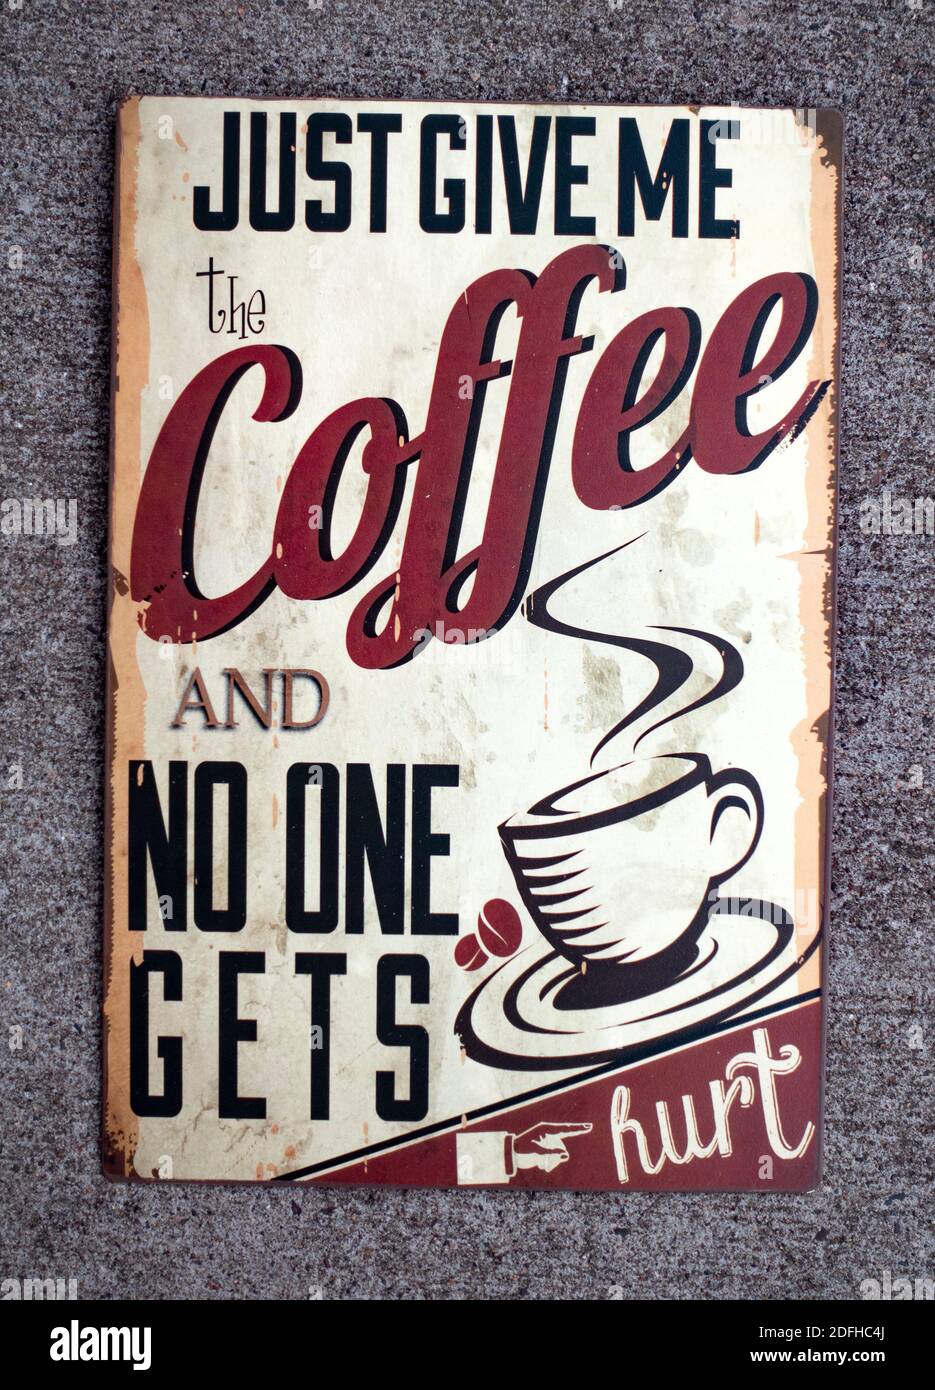 Una simpatica placca di metallo da appendere e un promemoria per il caffè che dice: "Basta darmi il caffè e nessuno si ferisce". St Paul Minnesota, Minnesota, Stati Uniti Foto Stock